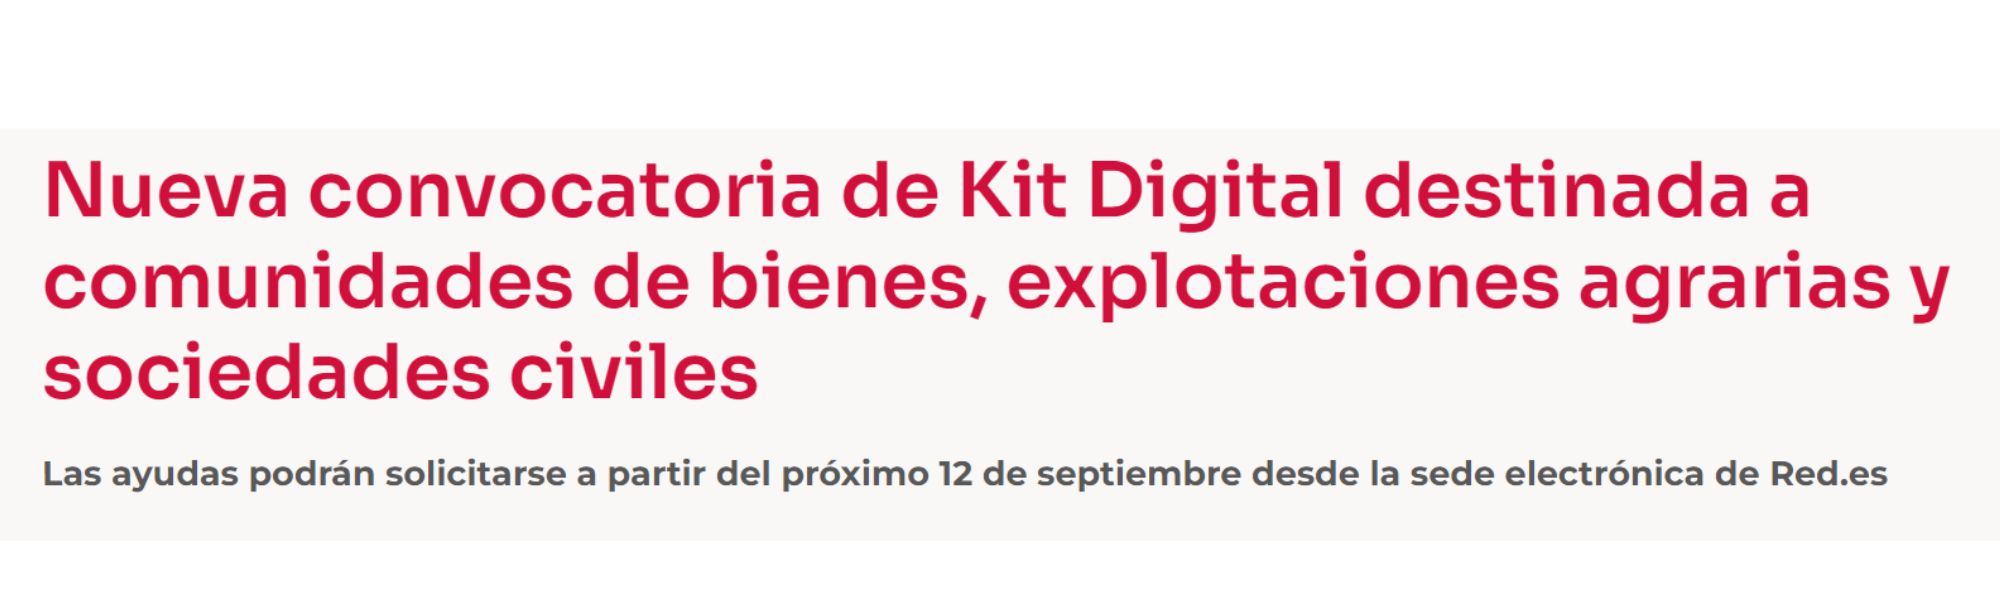 Kit Digital | Programa de Ayudas | Convocatoria para Comunidades de Bienes | Cámara de Comercio de Murcia | Oficina Acelera Pyme